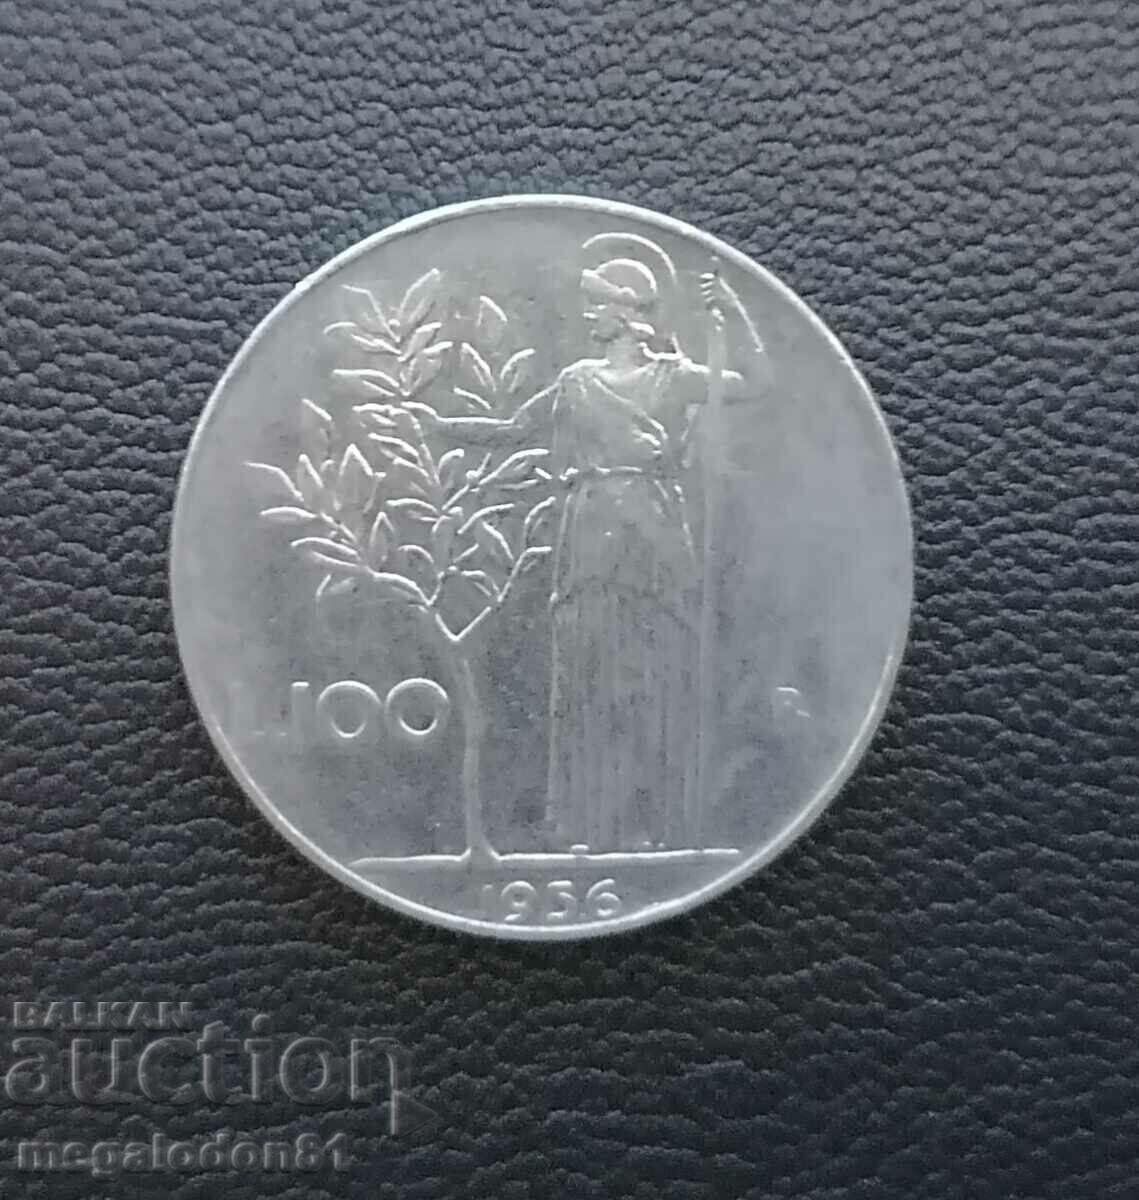 Italy - 100 lira, 1956